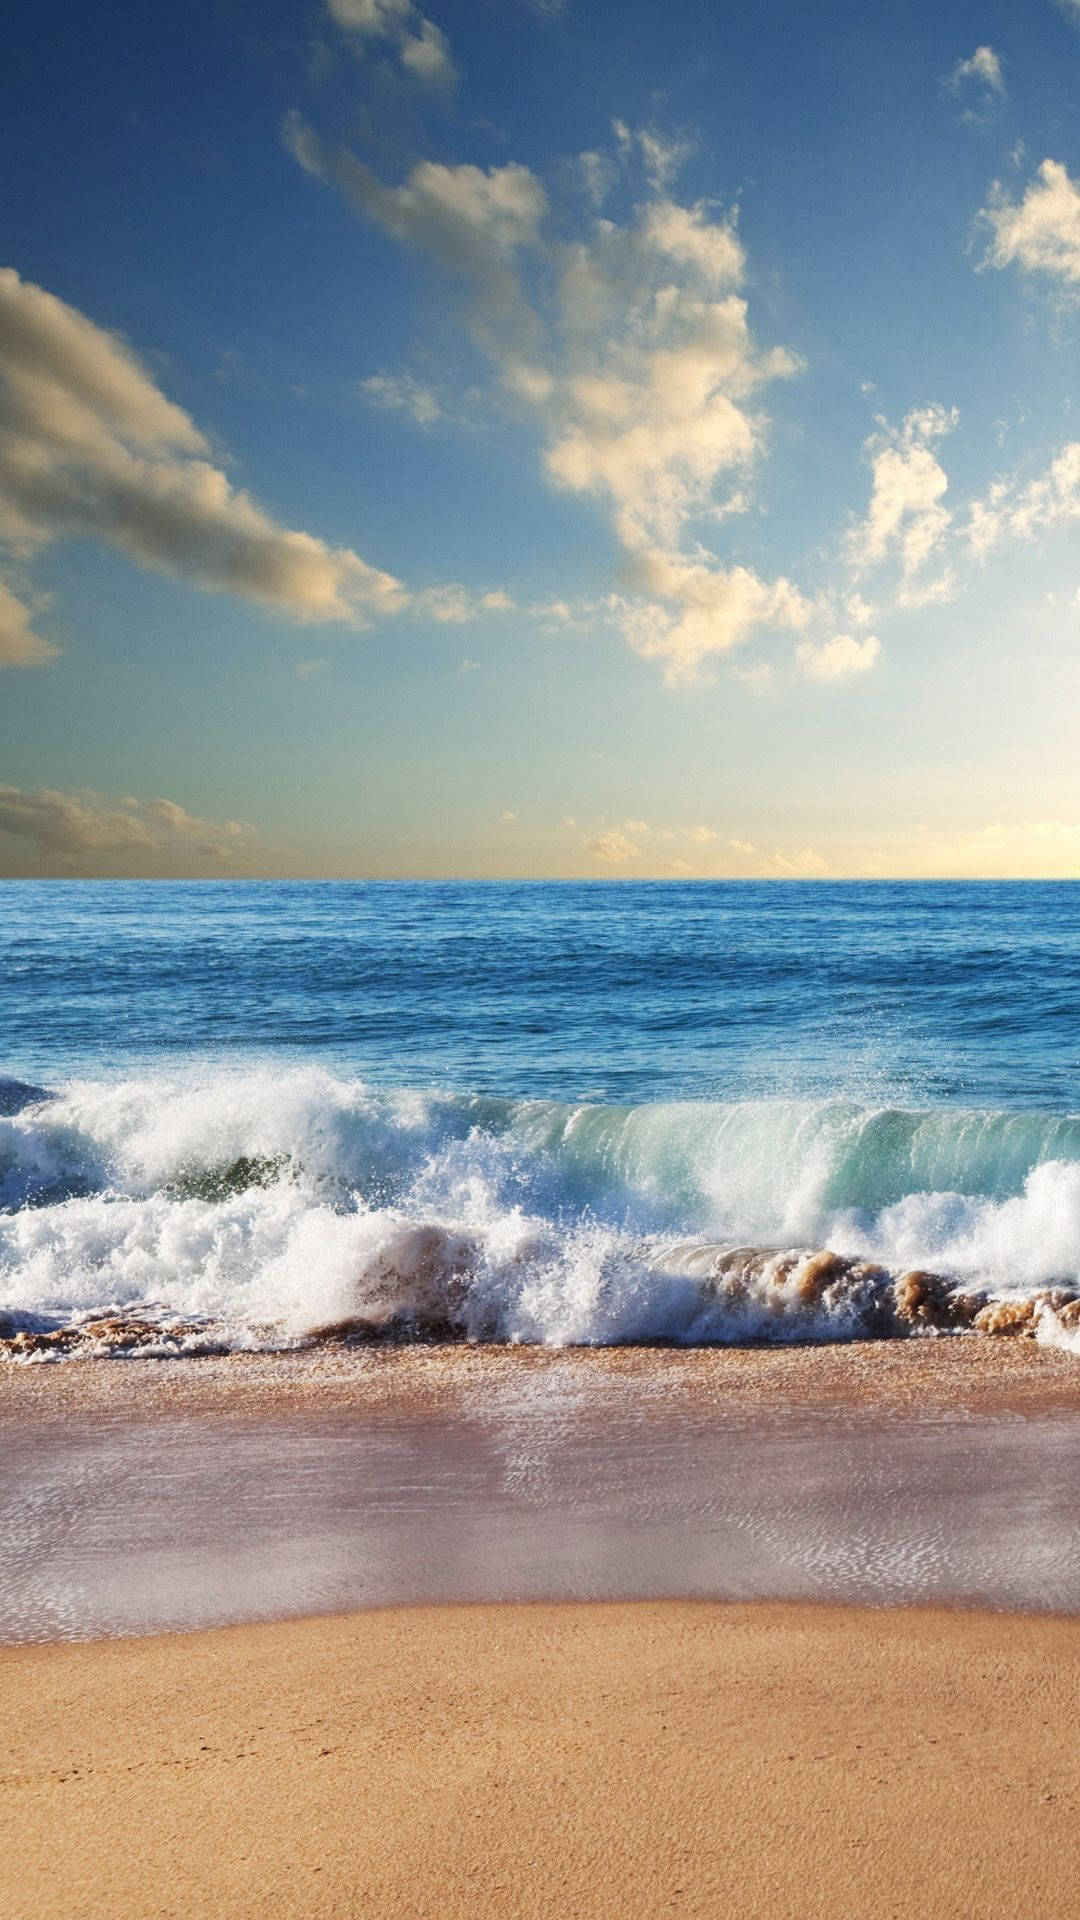 iPhone X Beach Waves Wallpaper